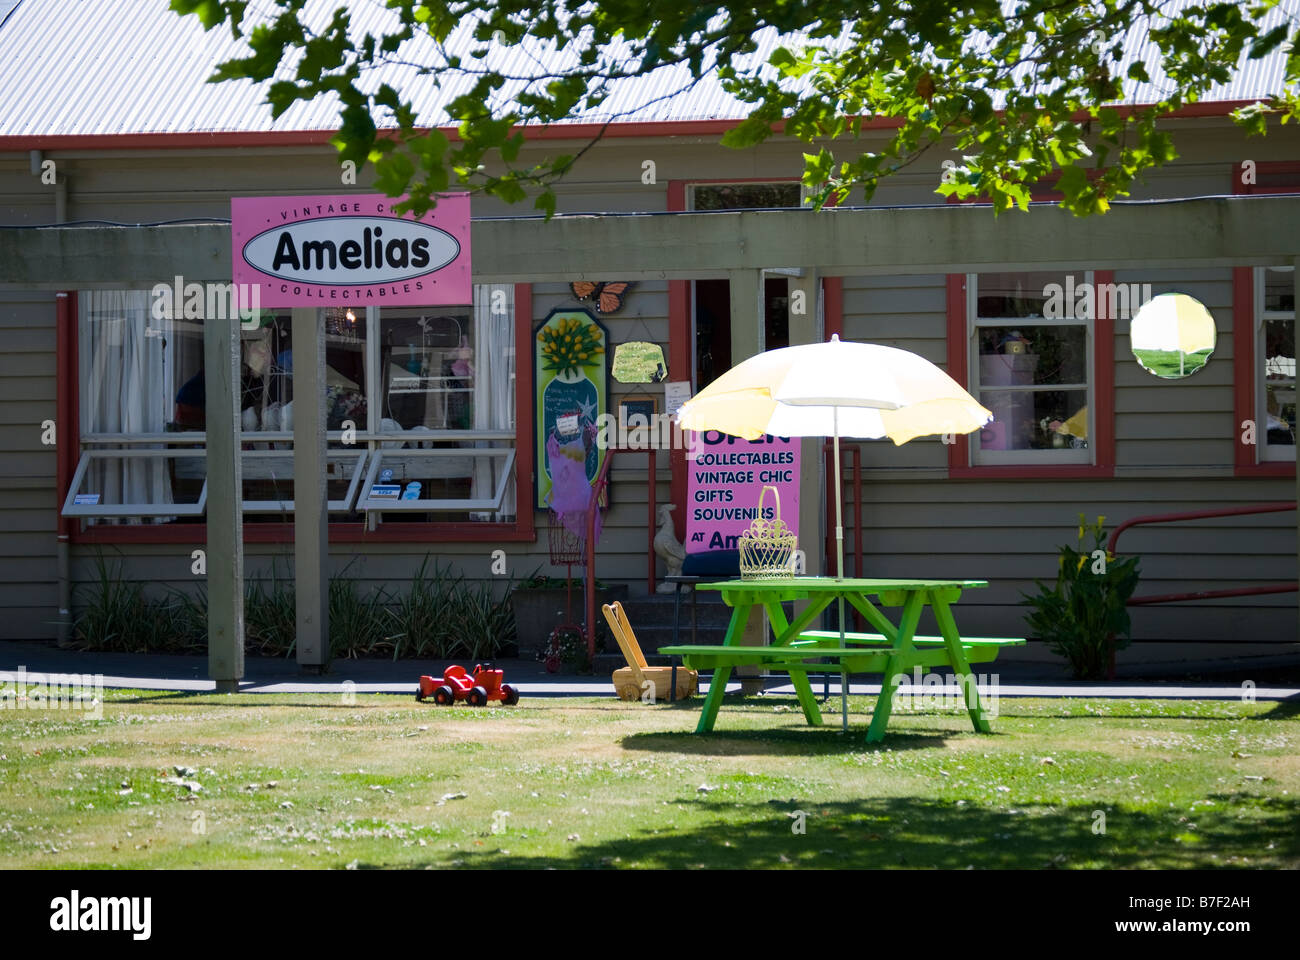 Amelias Collectables, Ashford Craft Village, West Street, Ashburton, Canterbury, Nouvelle-Zélande Banque D'Images